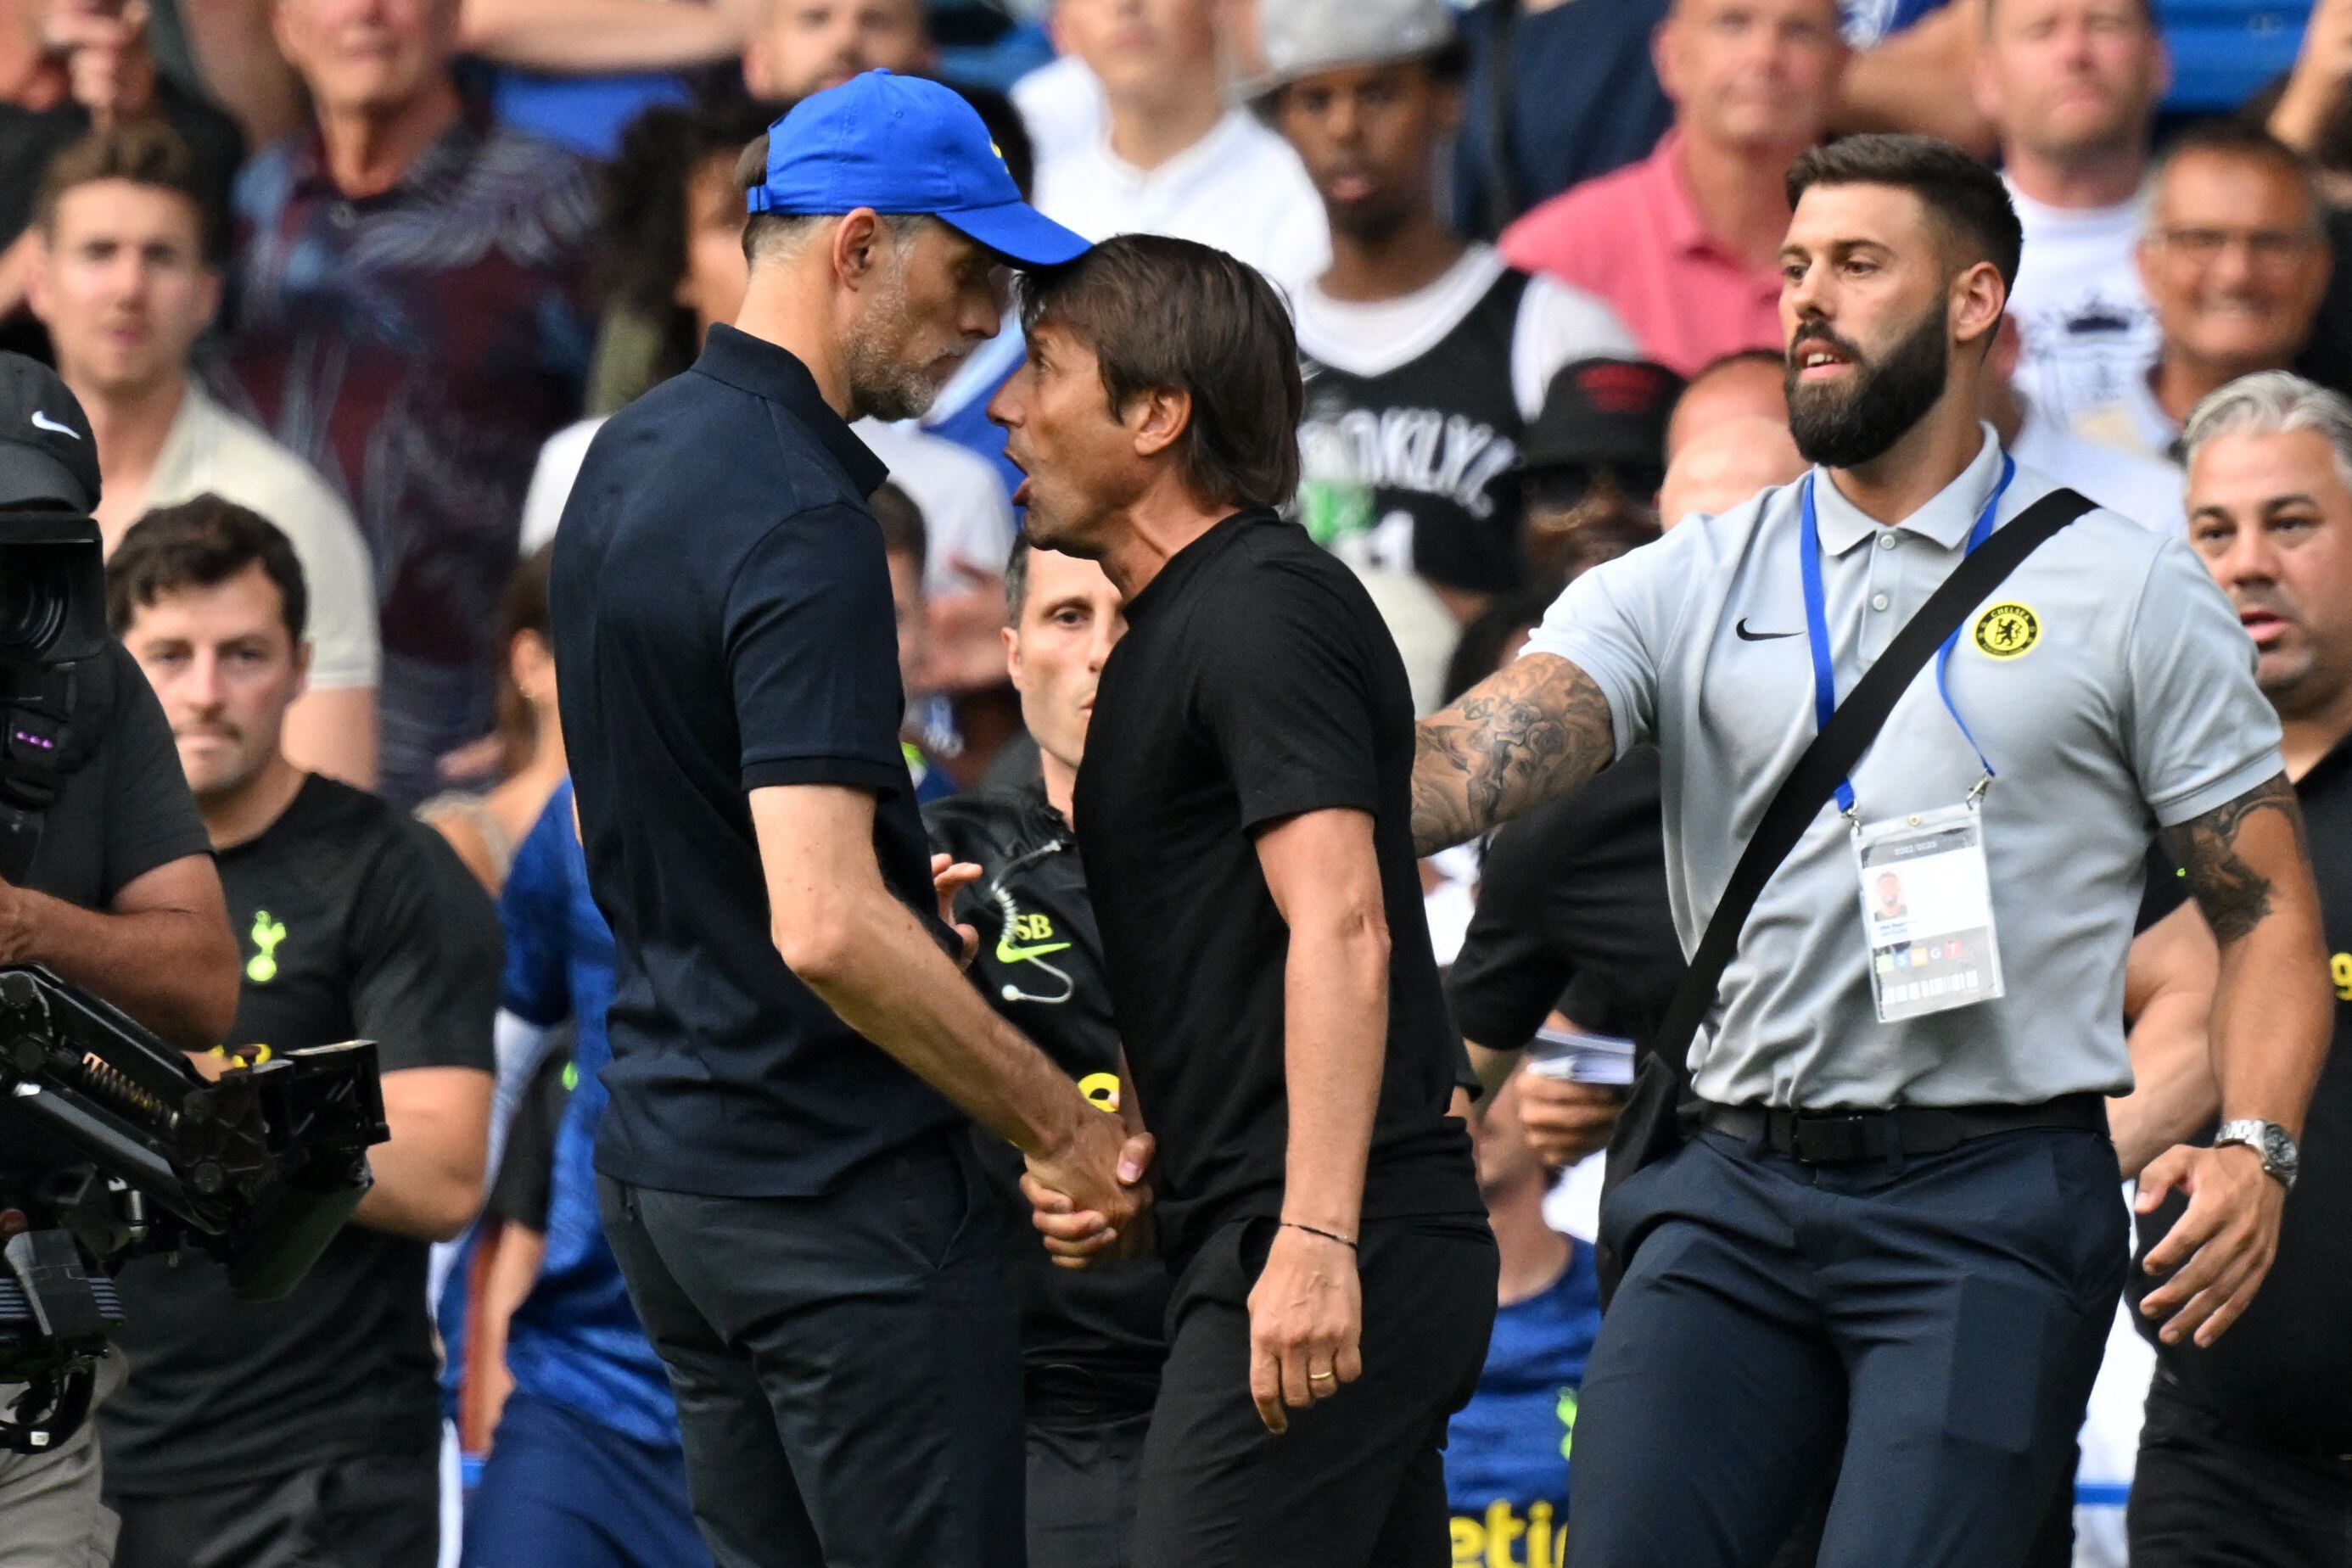 Thomas Tuchel (Chelsea) y Antonio Conte (Tottenham) se encararon al final del partido y de no ser porque los separaron, la situación hubiese pasado a más. 